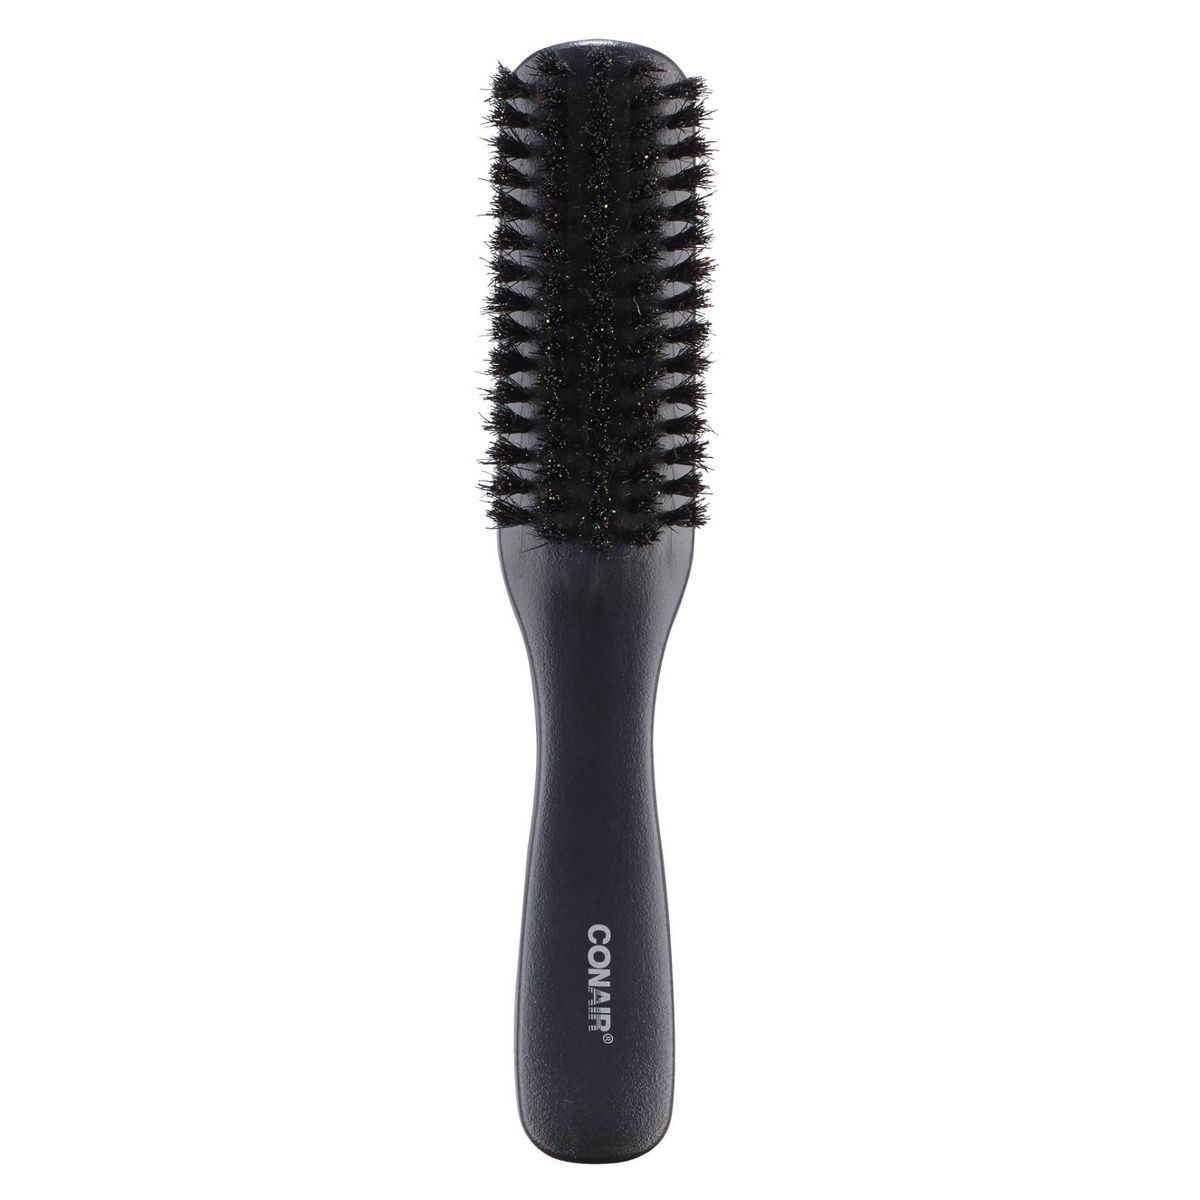 Conair Black Grooming Hair Brush | Target